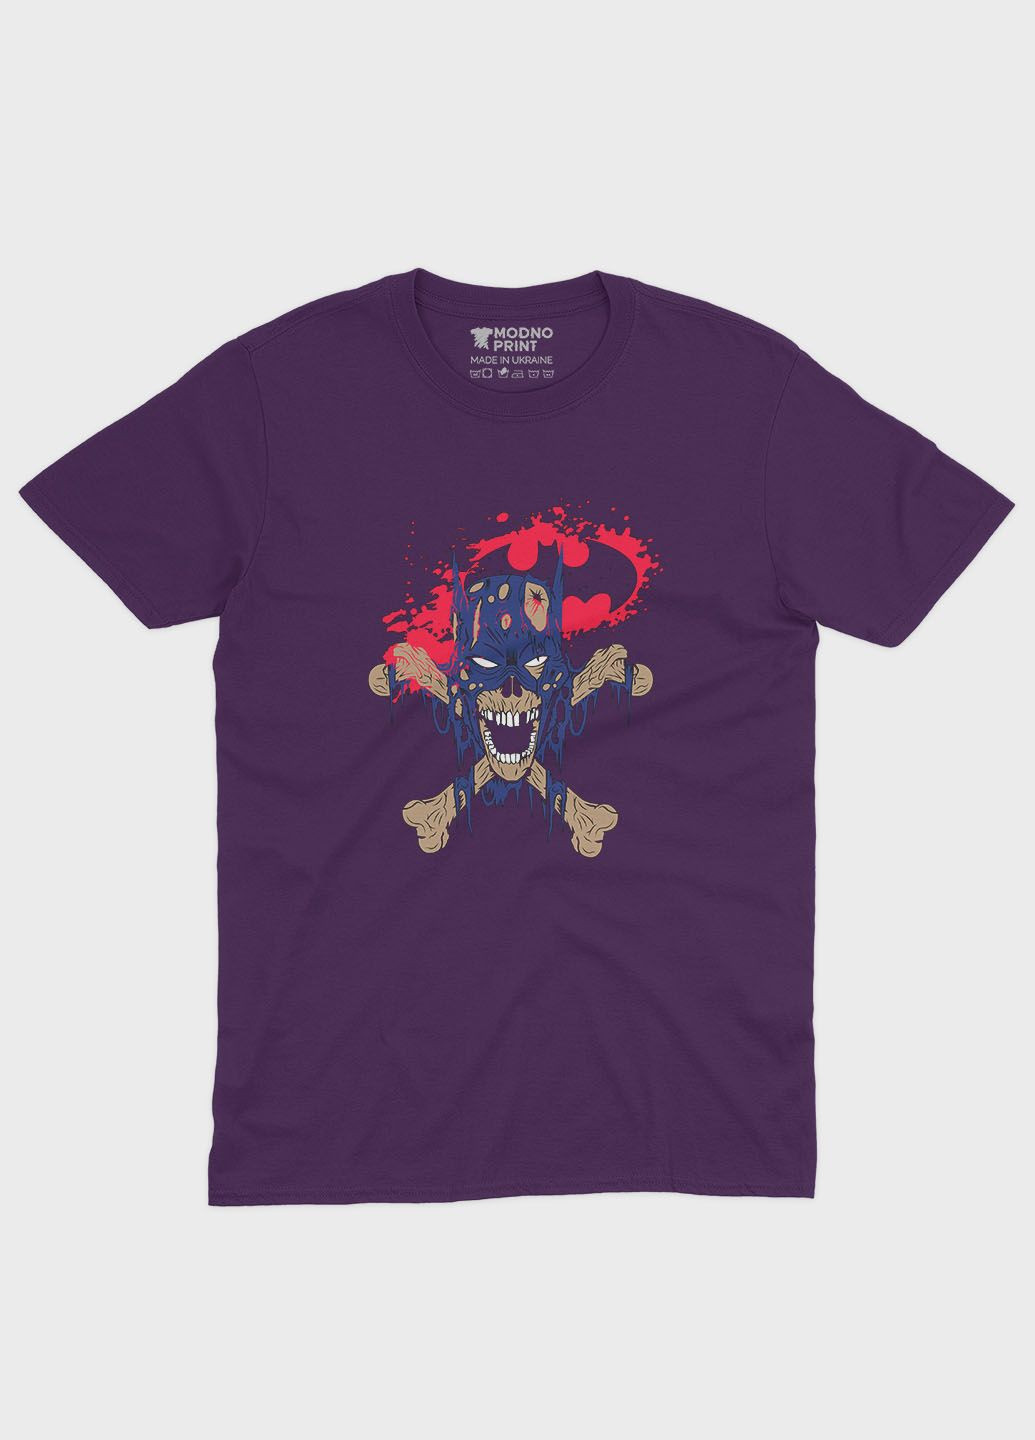 Фиолетовая демисезонная футболка для мальчика с принтом супергероя - бэтмен (ts001-1-dby-006-003-038-b) Modno